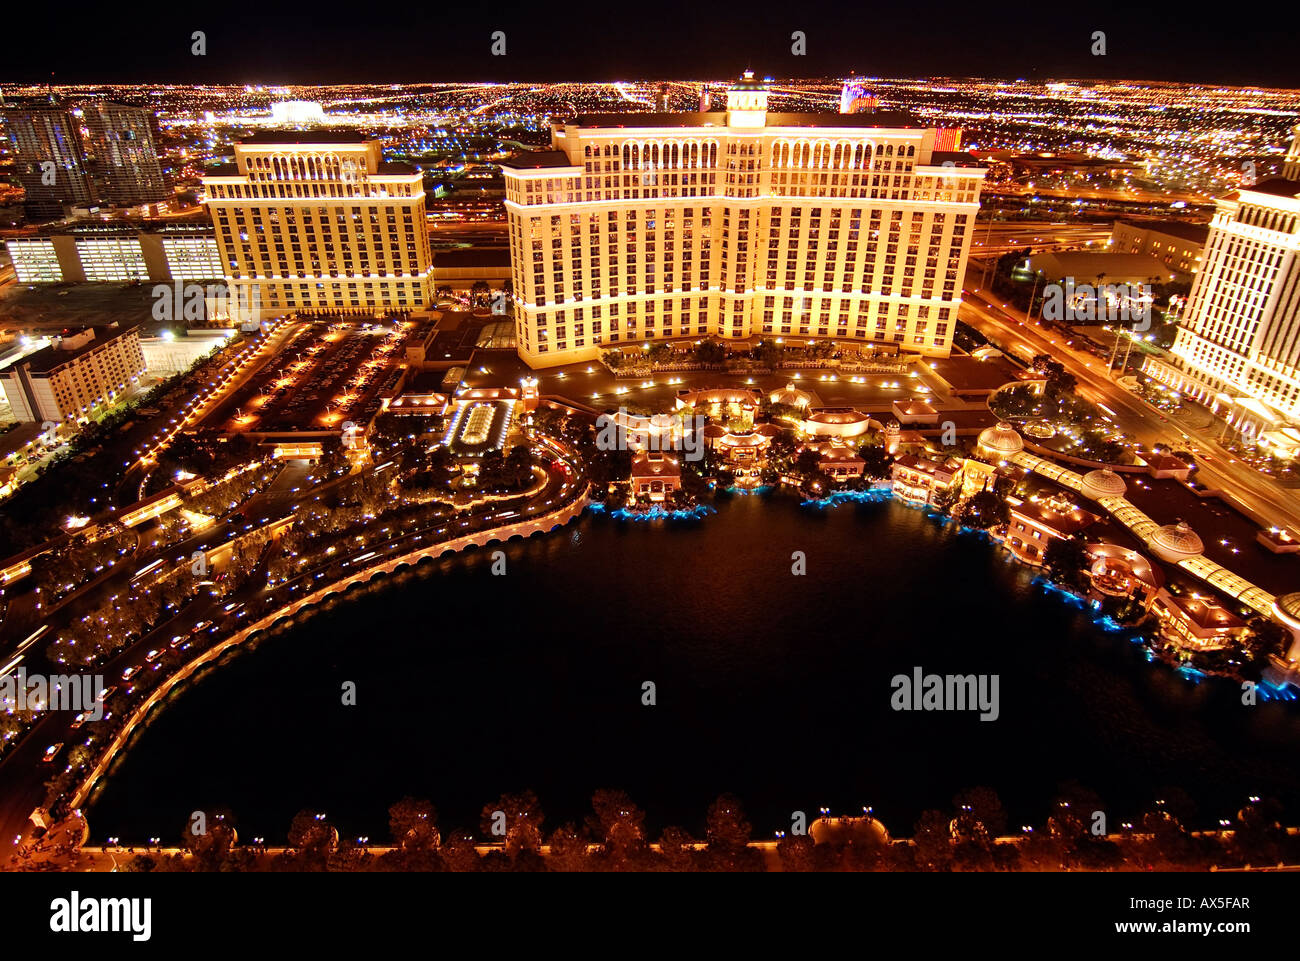 Bellagio Hotel & Casino and Cesar's Palace, Las Vegas Boulevard, Las Vegas, Nevada, USA, North America Stock Photo